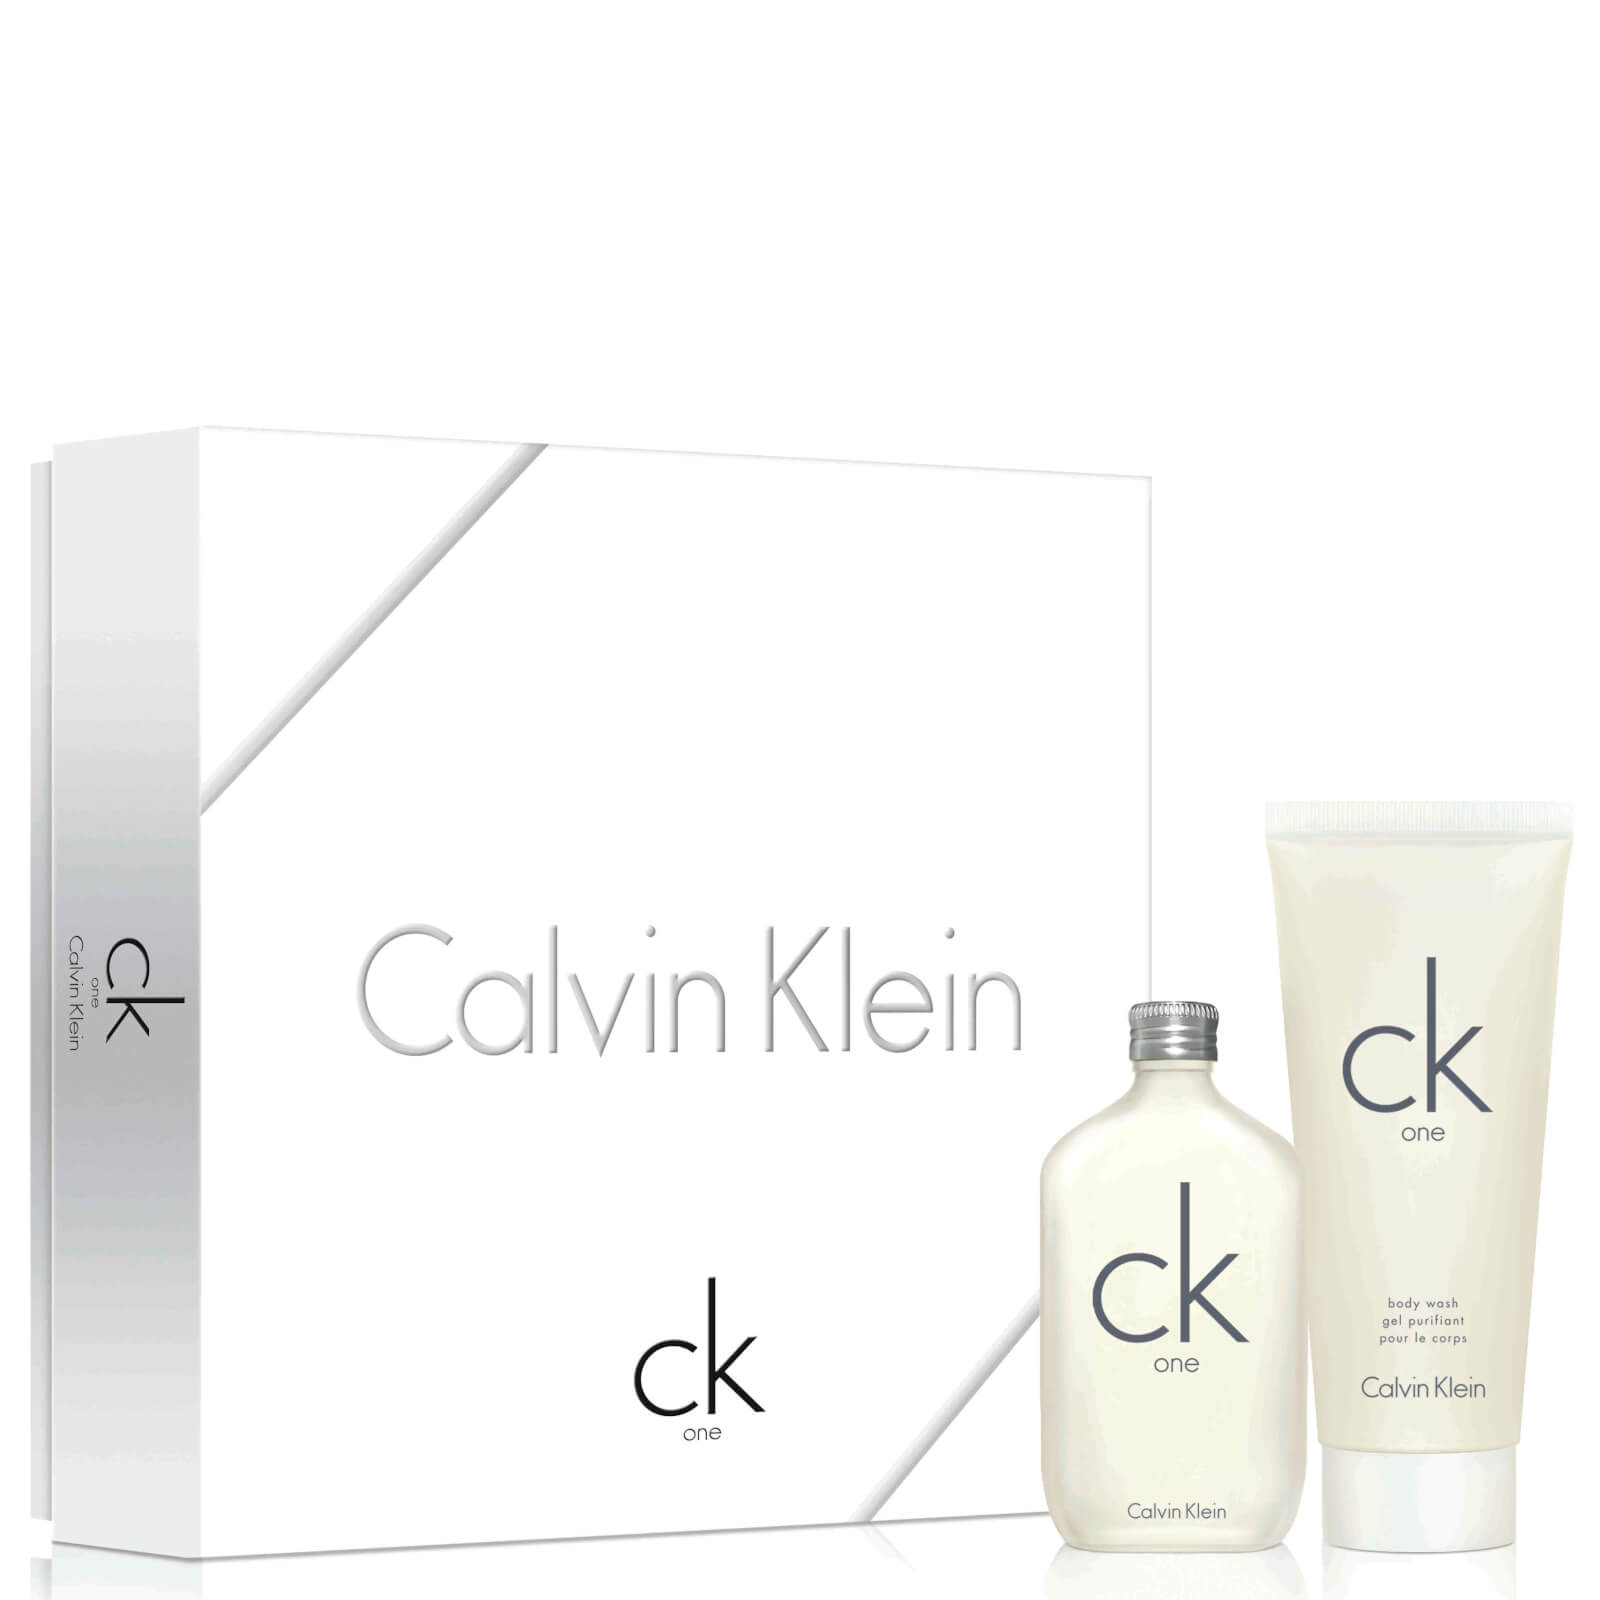 Cajita con Eau de Toilette para mujer CK One de Calvin Klein